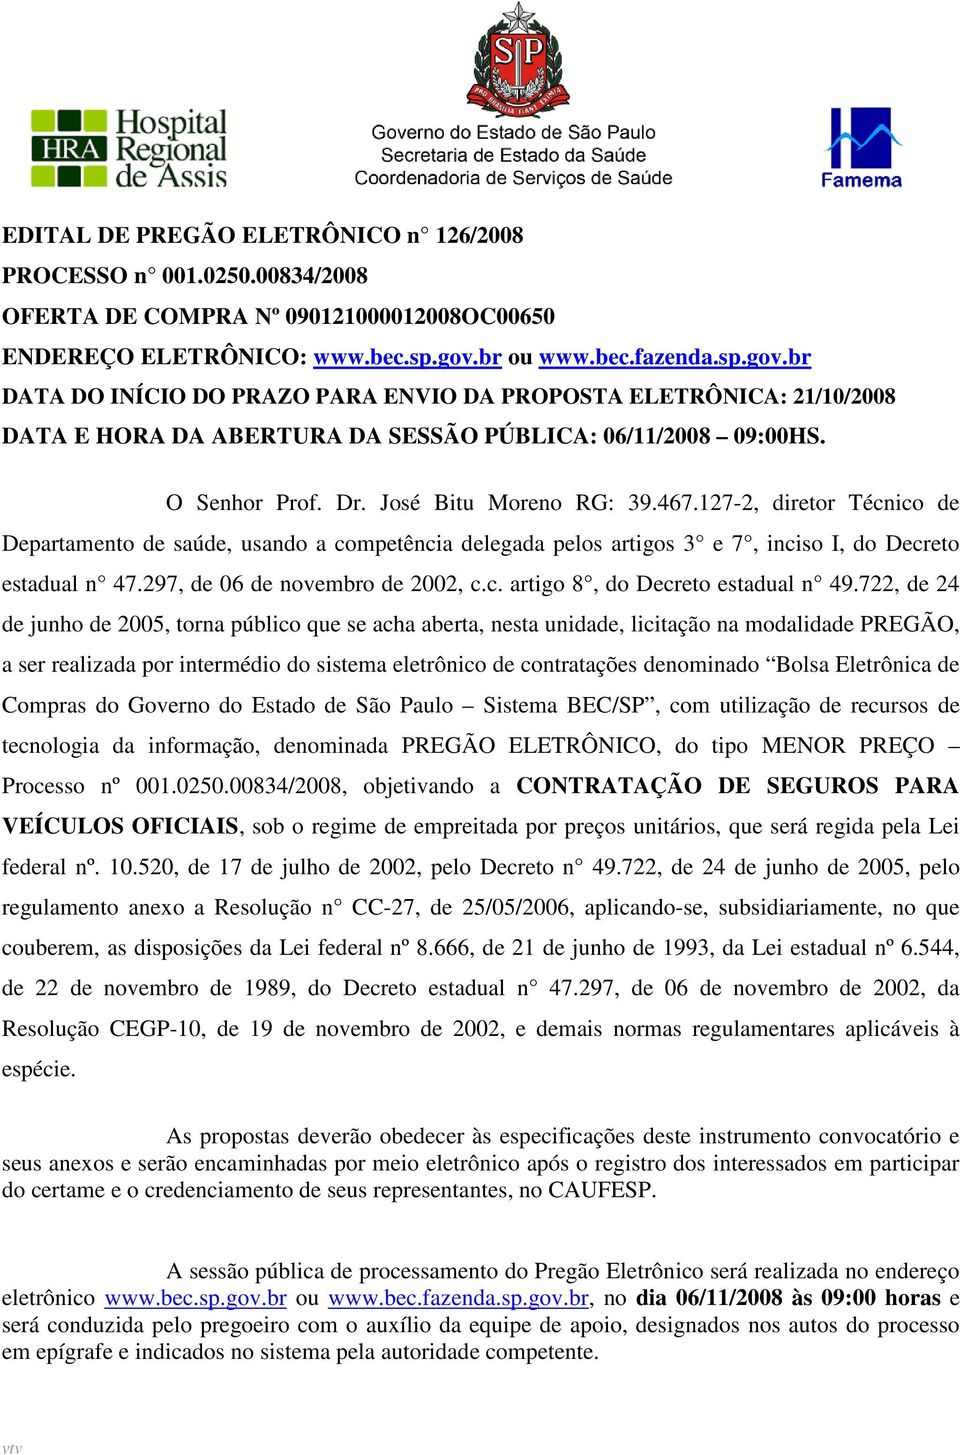 José Bitu Moreno RG: 39.467.127-2, diretor Técnico de Departamento de saúde, usando a competência delegada pelos artigos 3 e 7, inciso I, do Decreto estadual n 47.297, de 06 de novembro de 2002, c.c. artigo 8, do Decreto estadual n 49.